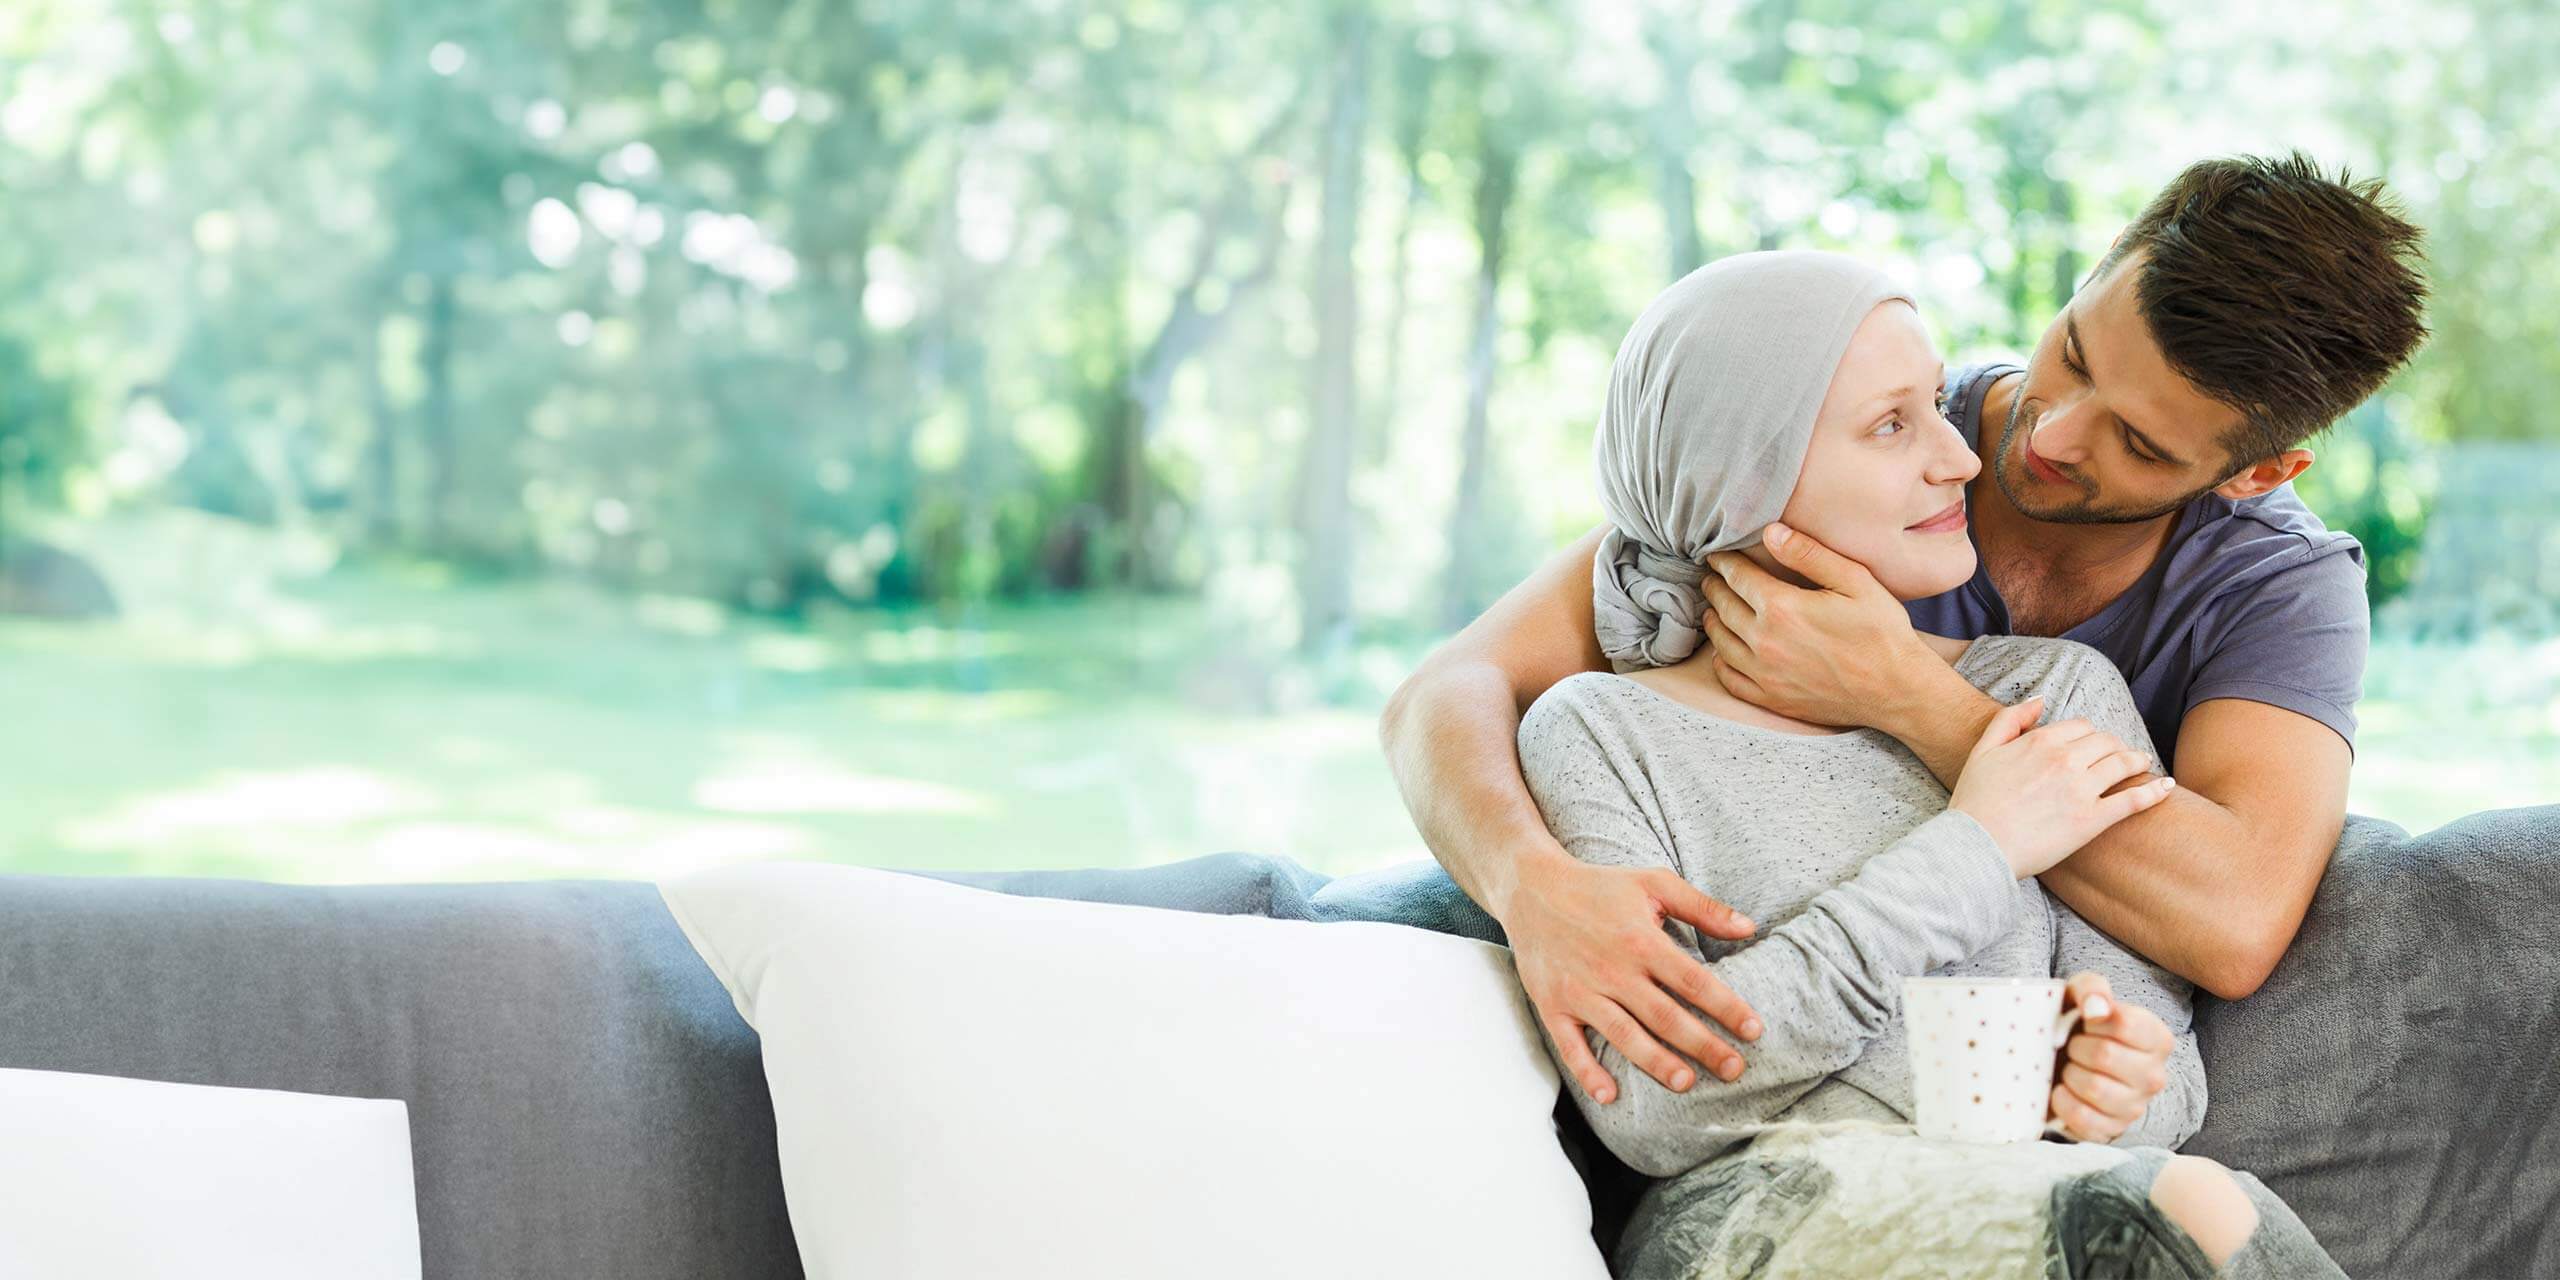 Ein Mann umarmt zärtlich eine Frau mit Kopftuch, die auf einem Sofa in einem ruhigen, sonnenbeschienenen Garten sitzt. Die Frau hält mit beiden Händen einen weißen Becher und beide blicken sich nachdenklich und liebevoll in die Augen.